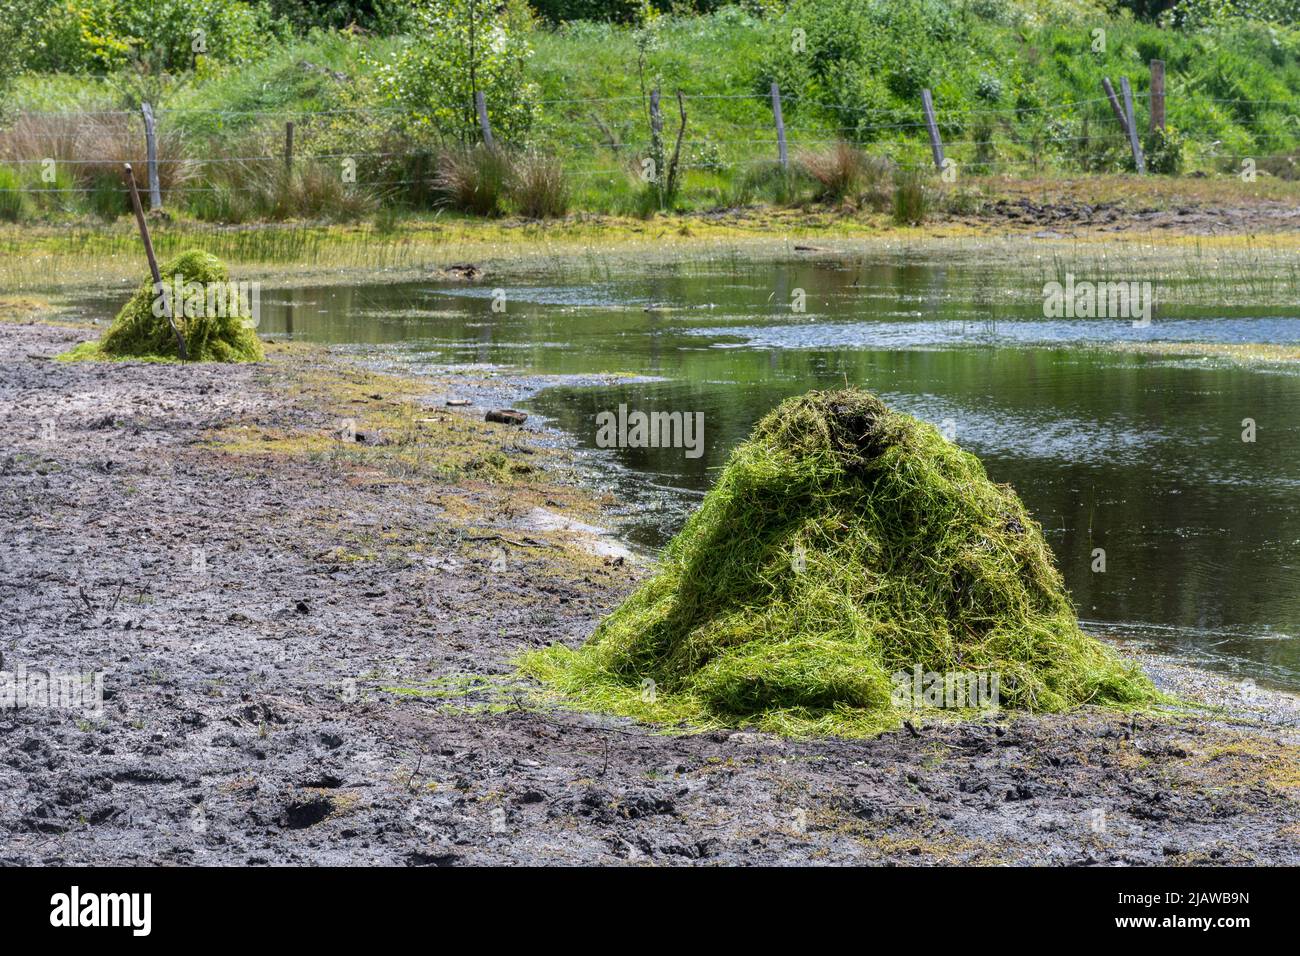 Retirer la plante envahissante Crassula helmsii, une espèce introduite non indigène, d'un grand étang dans le Hampshire, au Royaume-Uni. Piles de Crasula défriché par étang. Banque D'Images